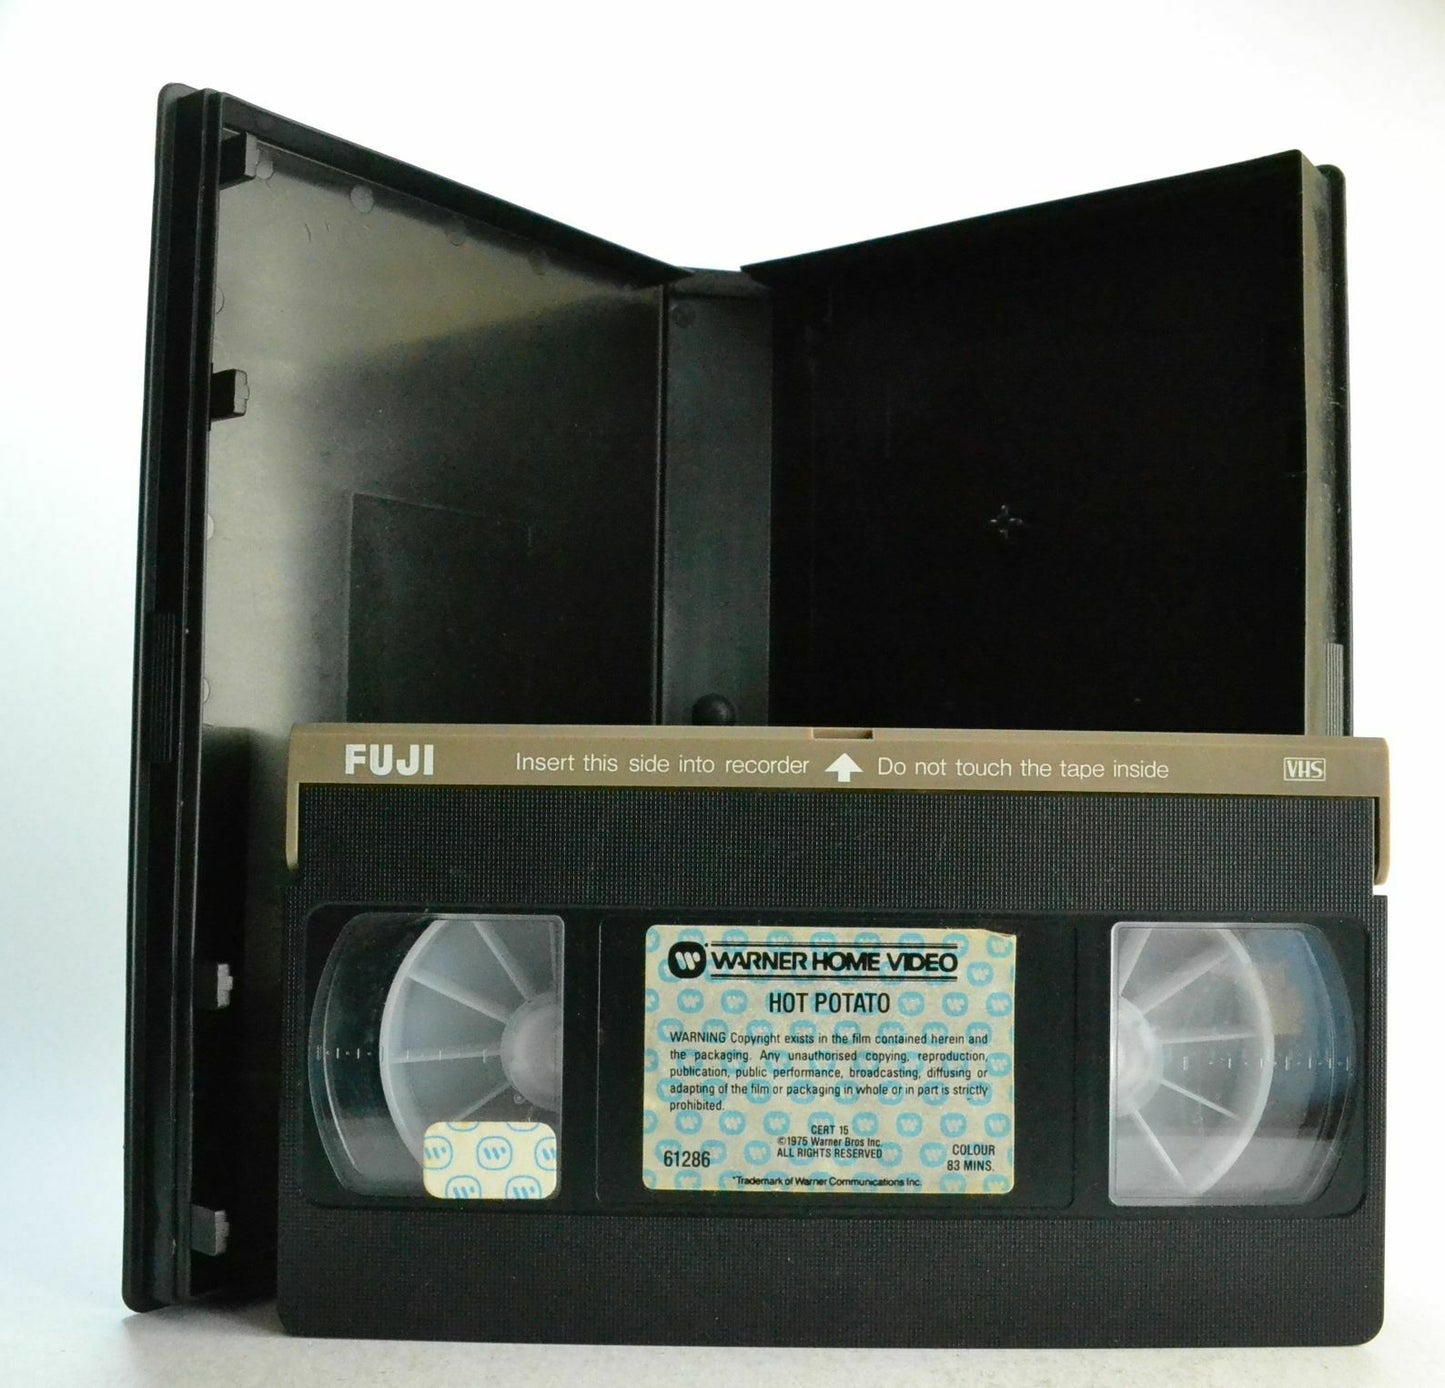 Hot Potato: Jim Kelly [Large Box] Kung-Fu - Grindhouse Action - Uncut Pre Cert Version - VHS-